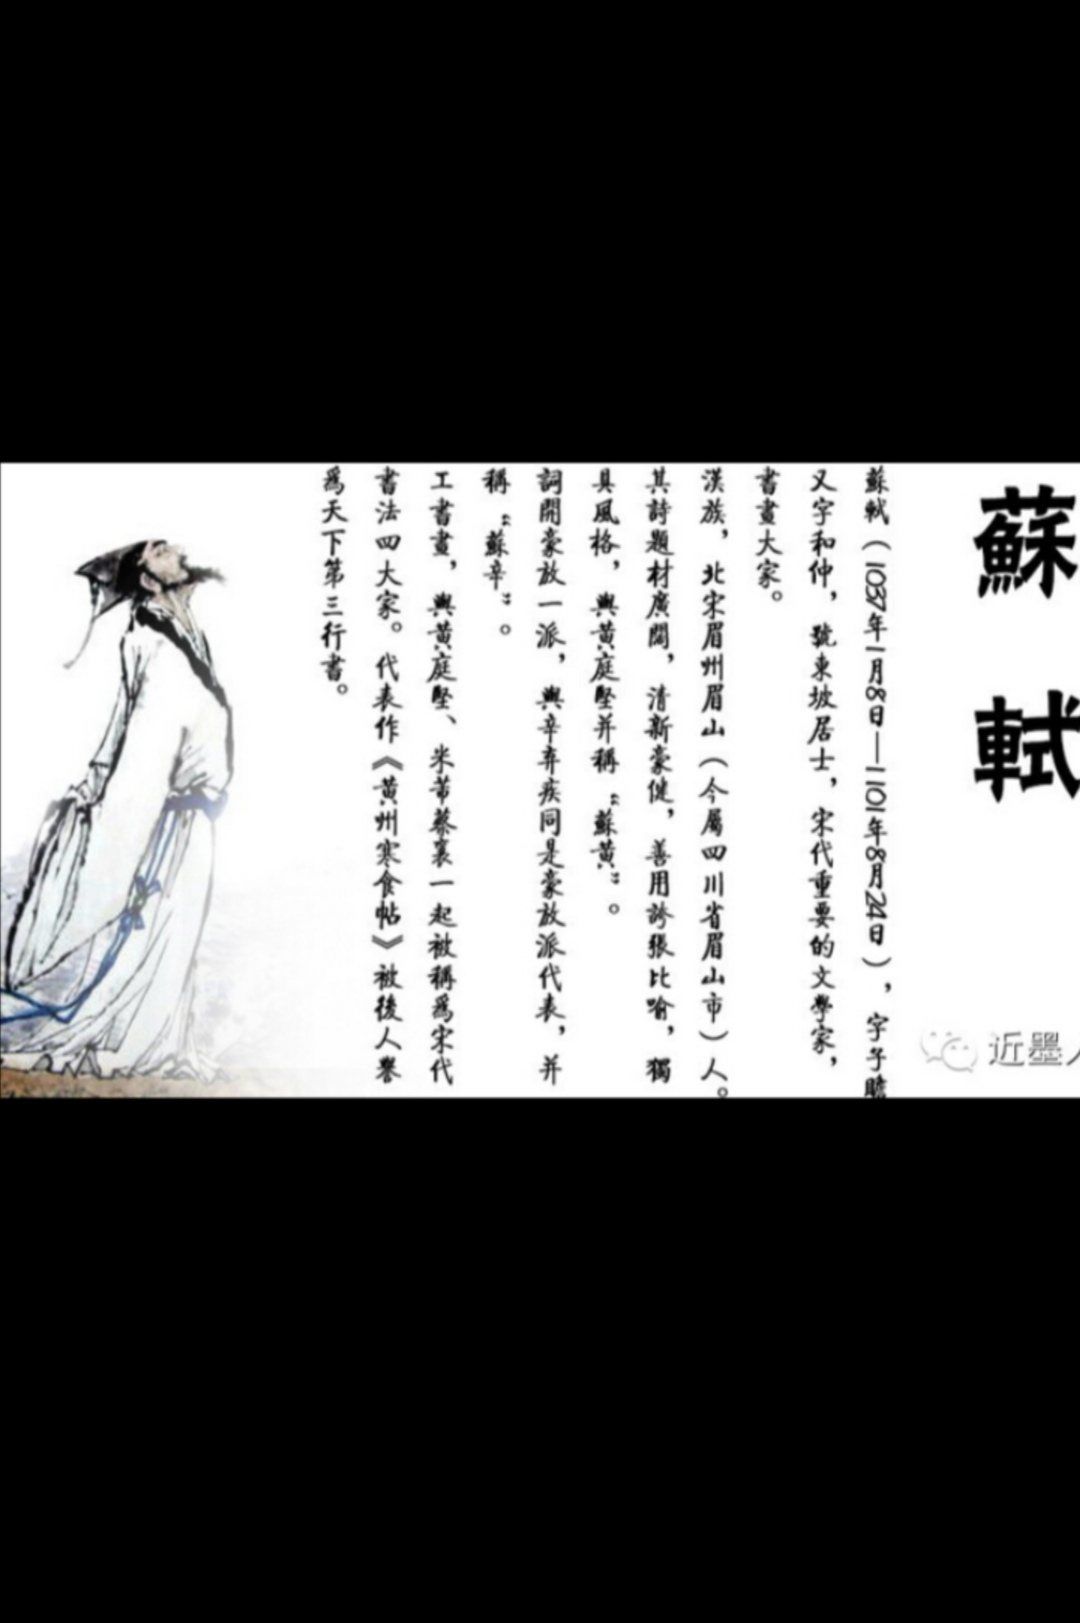 儒家思想体现了人文主义 苏轼《六一居士集叙》、苏轼